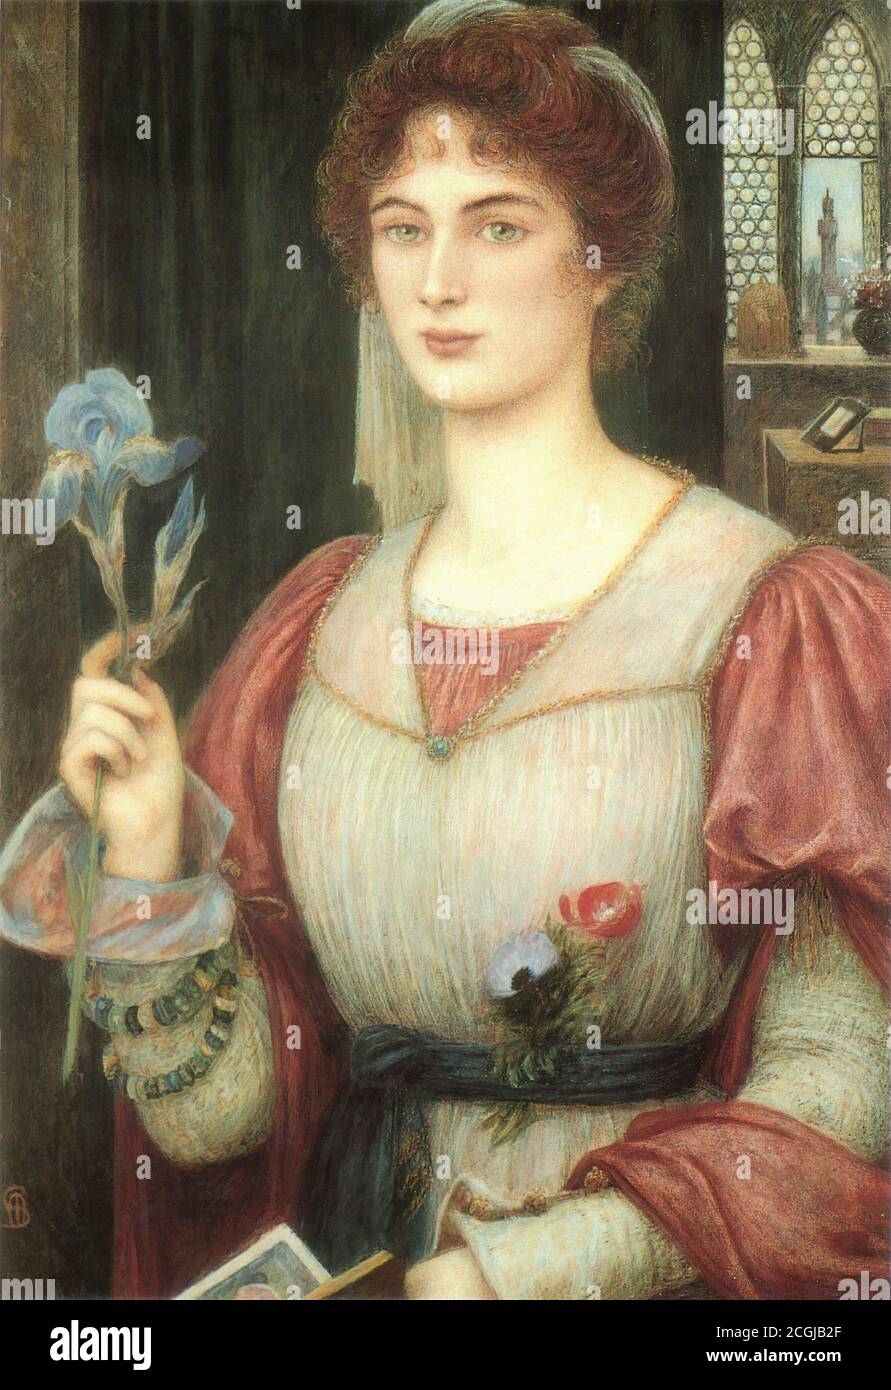 Stillman Marie Spartali - eine Florentiner Lilie - British School - 19. Jahrhundert Stockfoto